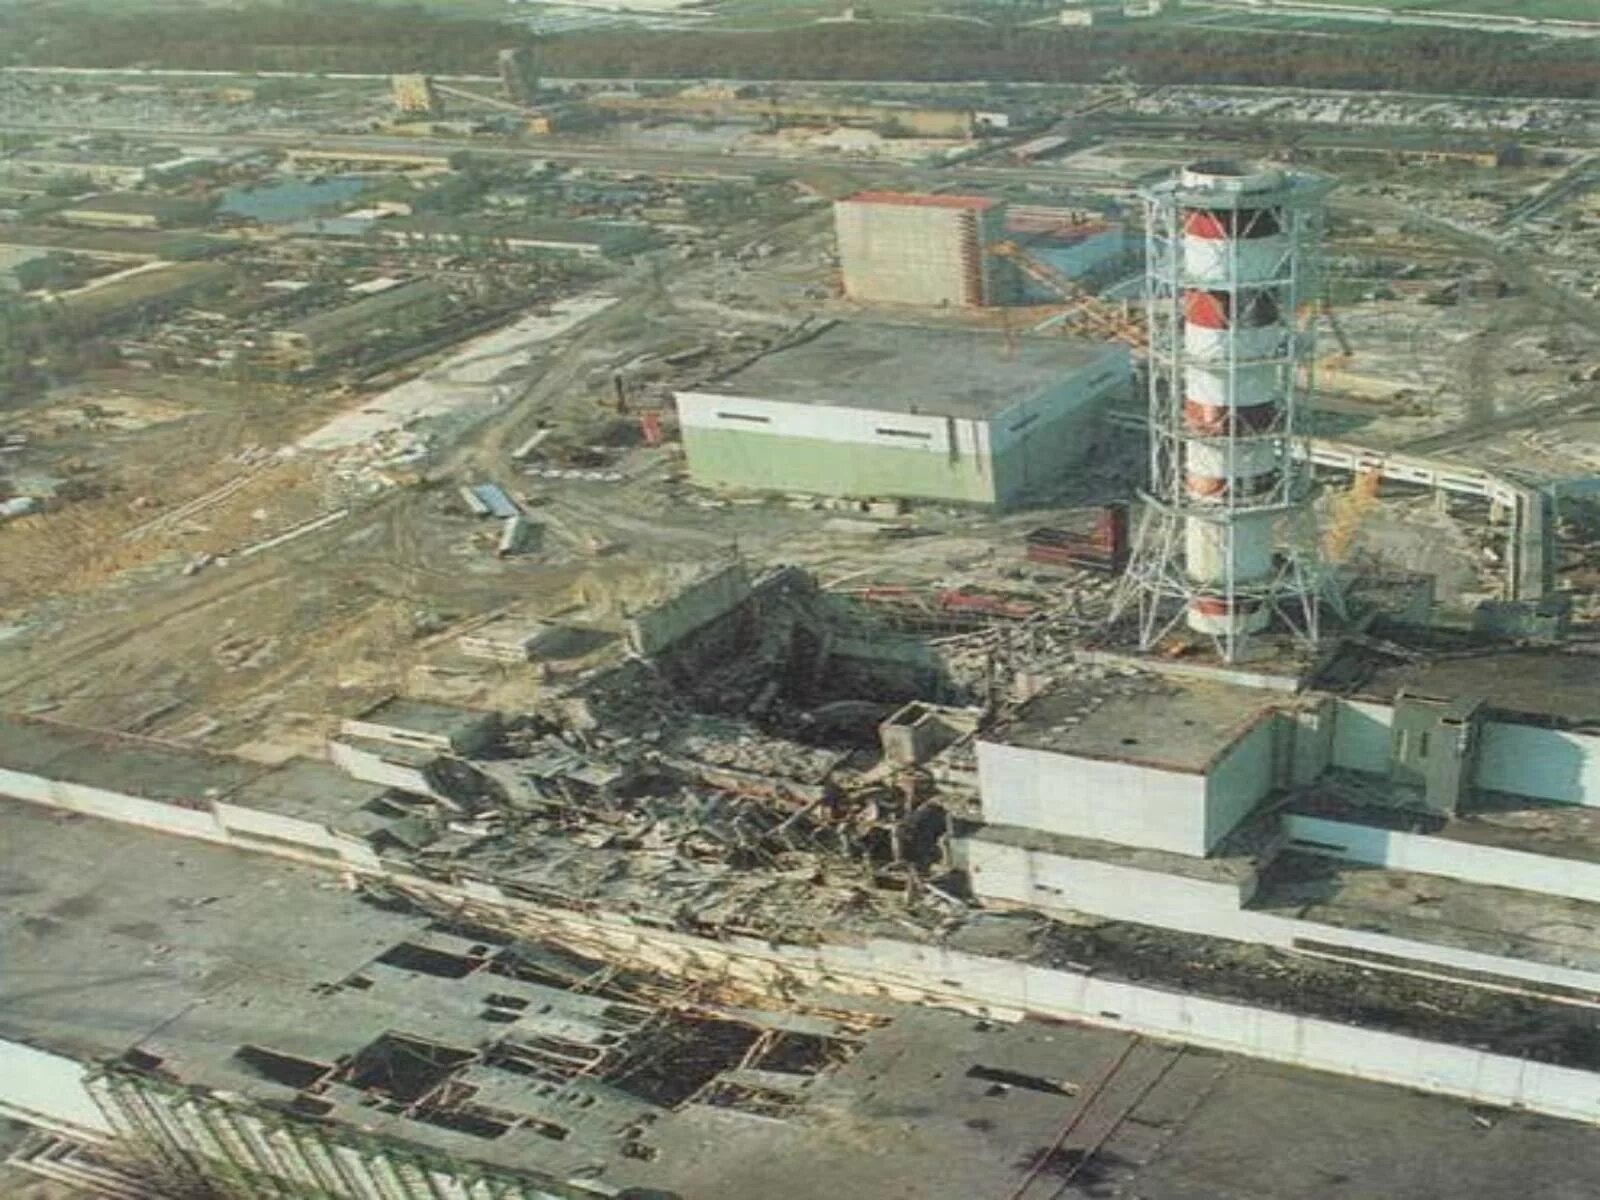 Ядерный взрыв аэс. Чернобыль ЧАЭС 4 энергоблок взрыв. Чернобыль 4 энергоблок 26 апреля 1986. 1986 Катастрофа на Чернобыльской АЭС. Авария на Чернобыльской атомной электростанции - 26 апреля 1986 года.